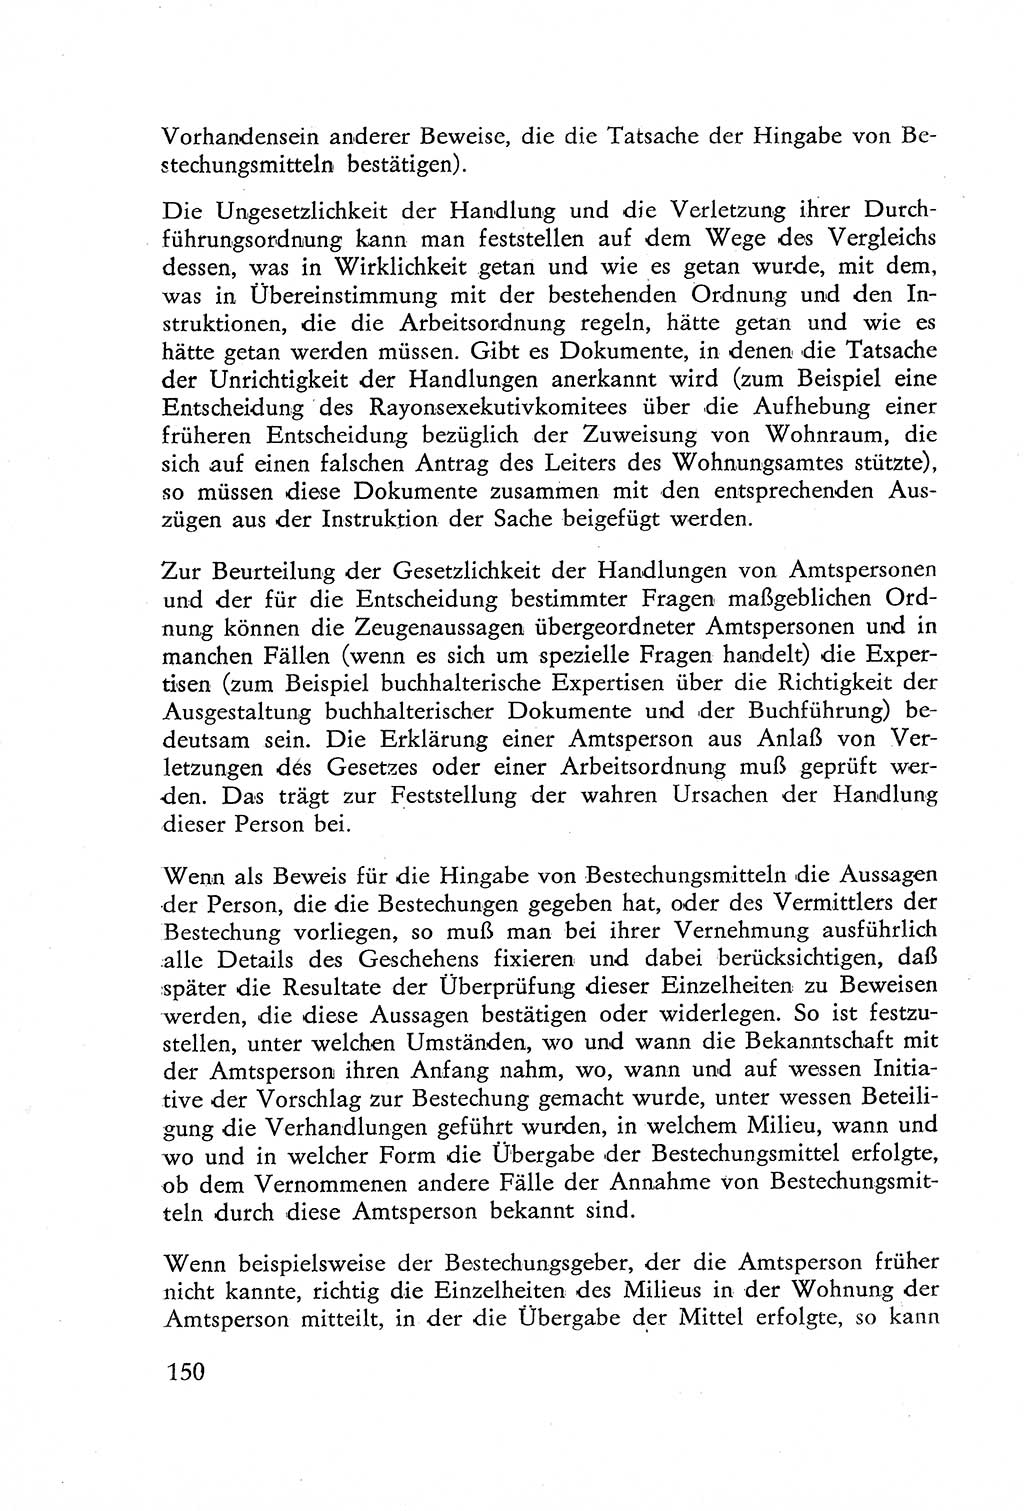 Die Untersuchung einzelner Verbrechensarten [Deutsche Demokratische Republik (DDR)] 1960, Seite 150 (Unters. Verbr.-Art. DDR 1960, S. 150)